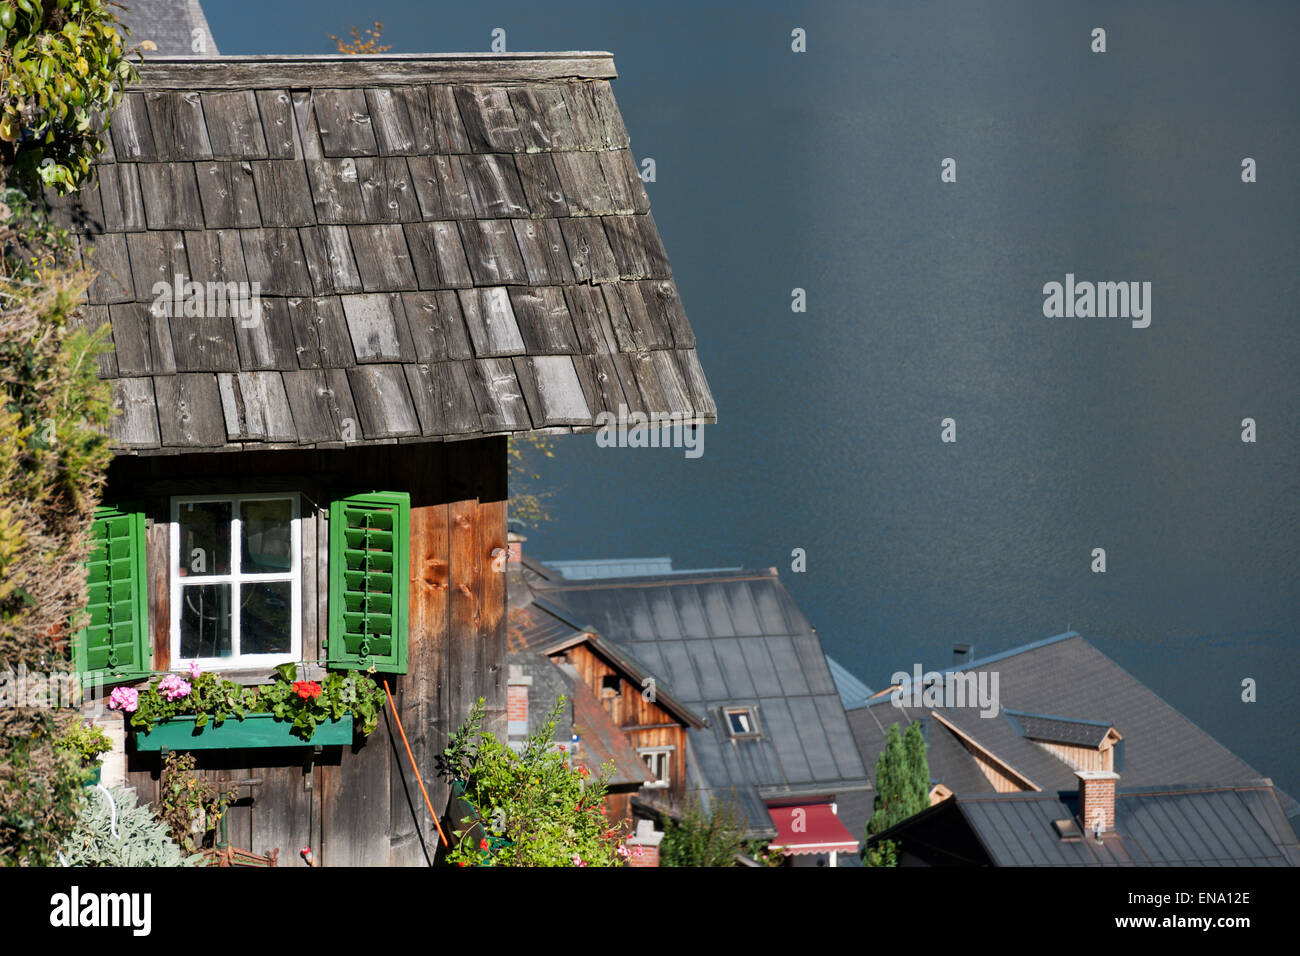 Holzhütte mit Fenster, Blumen und grünen Fensterläden über Hallstatt, Salzkammergut, Autriche Banque D'Images